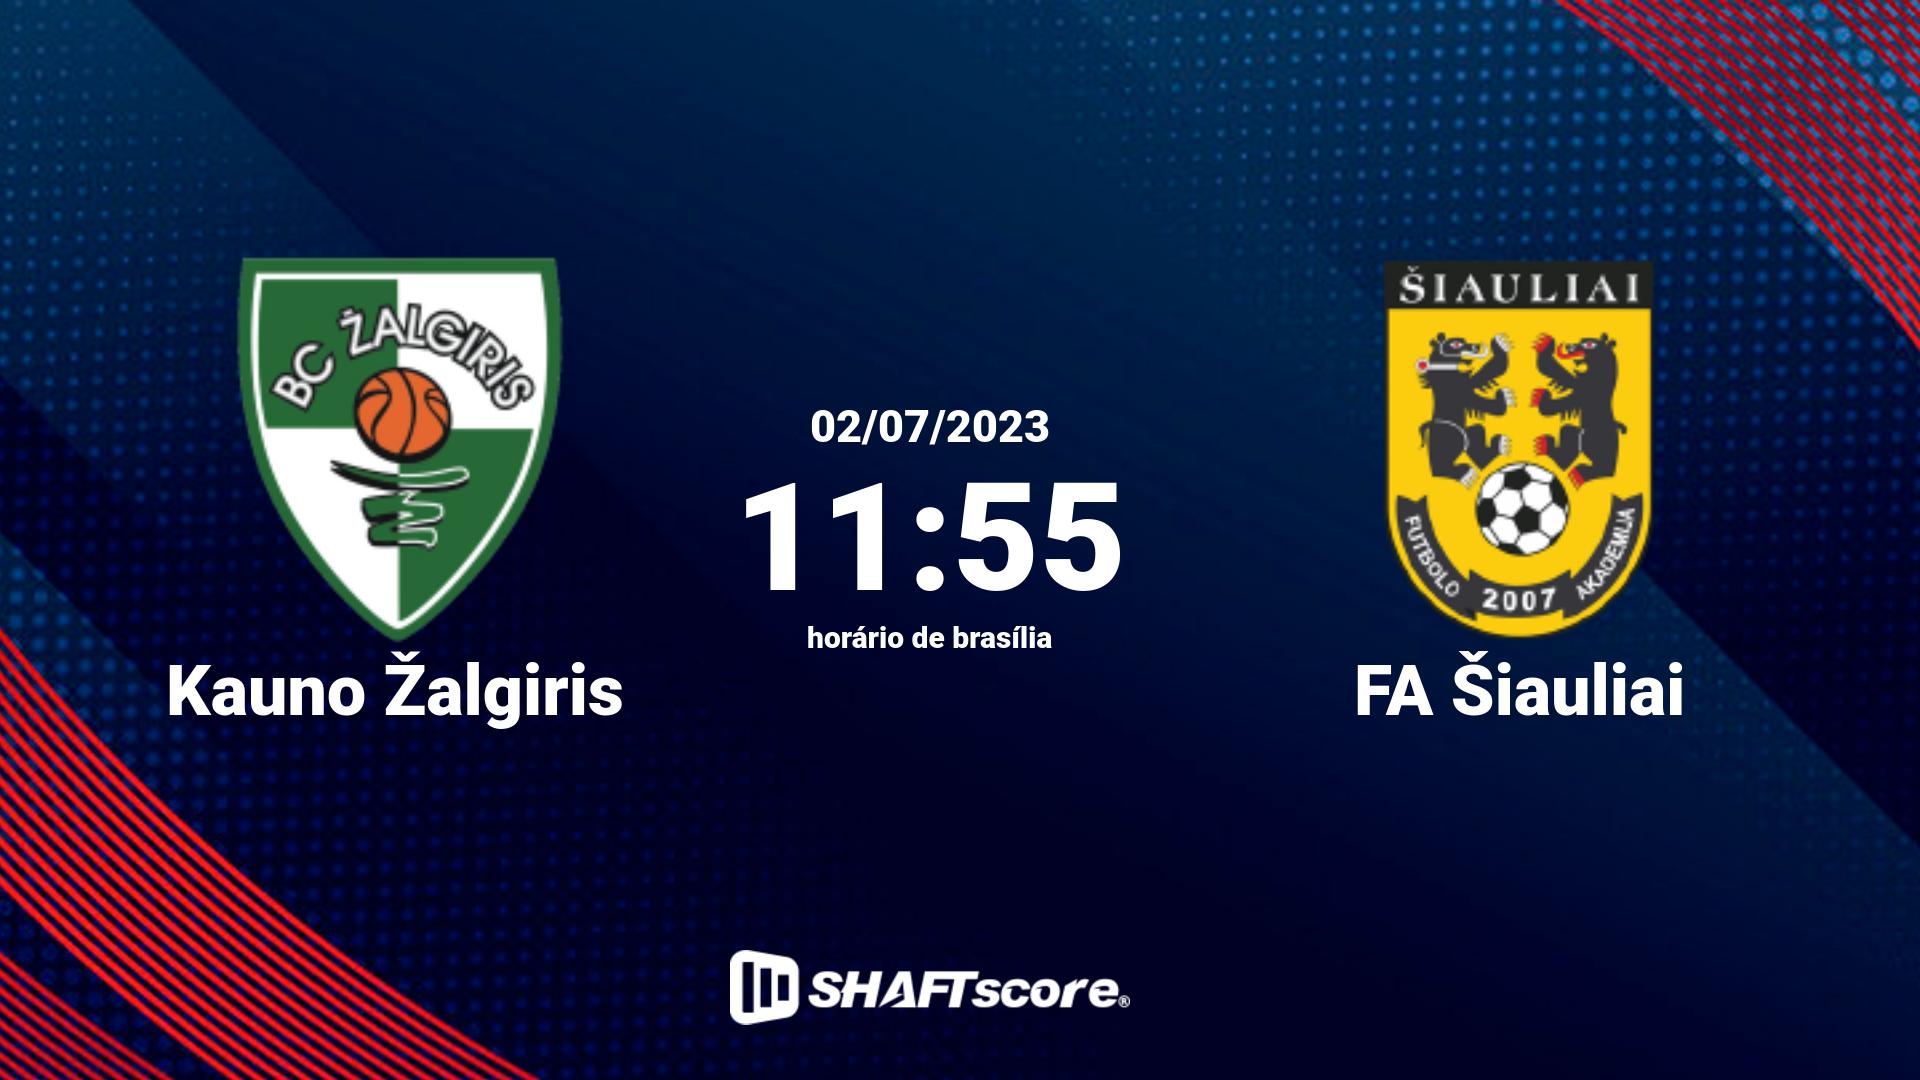 Estatísticas do jogo Kauno Žalgiris vs FA Šiauliai 02.07 11:55